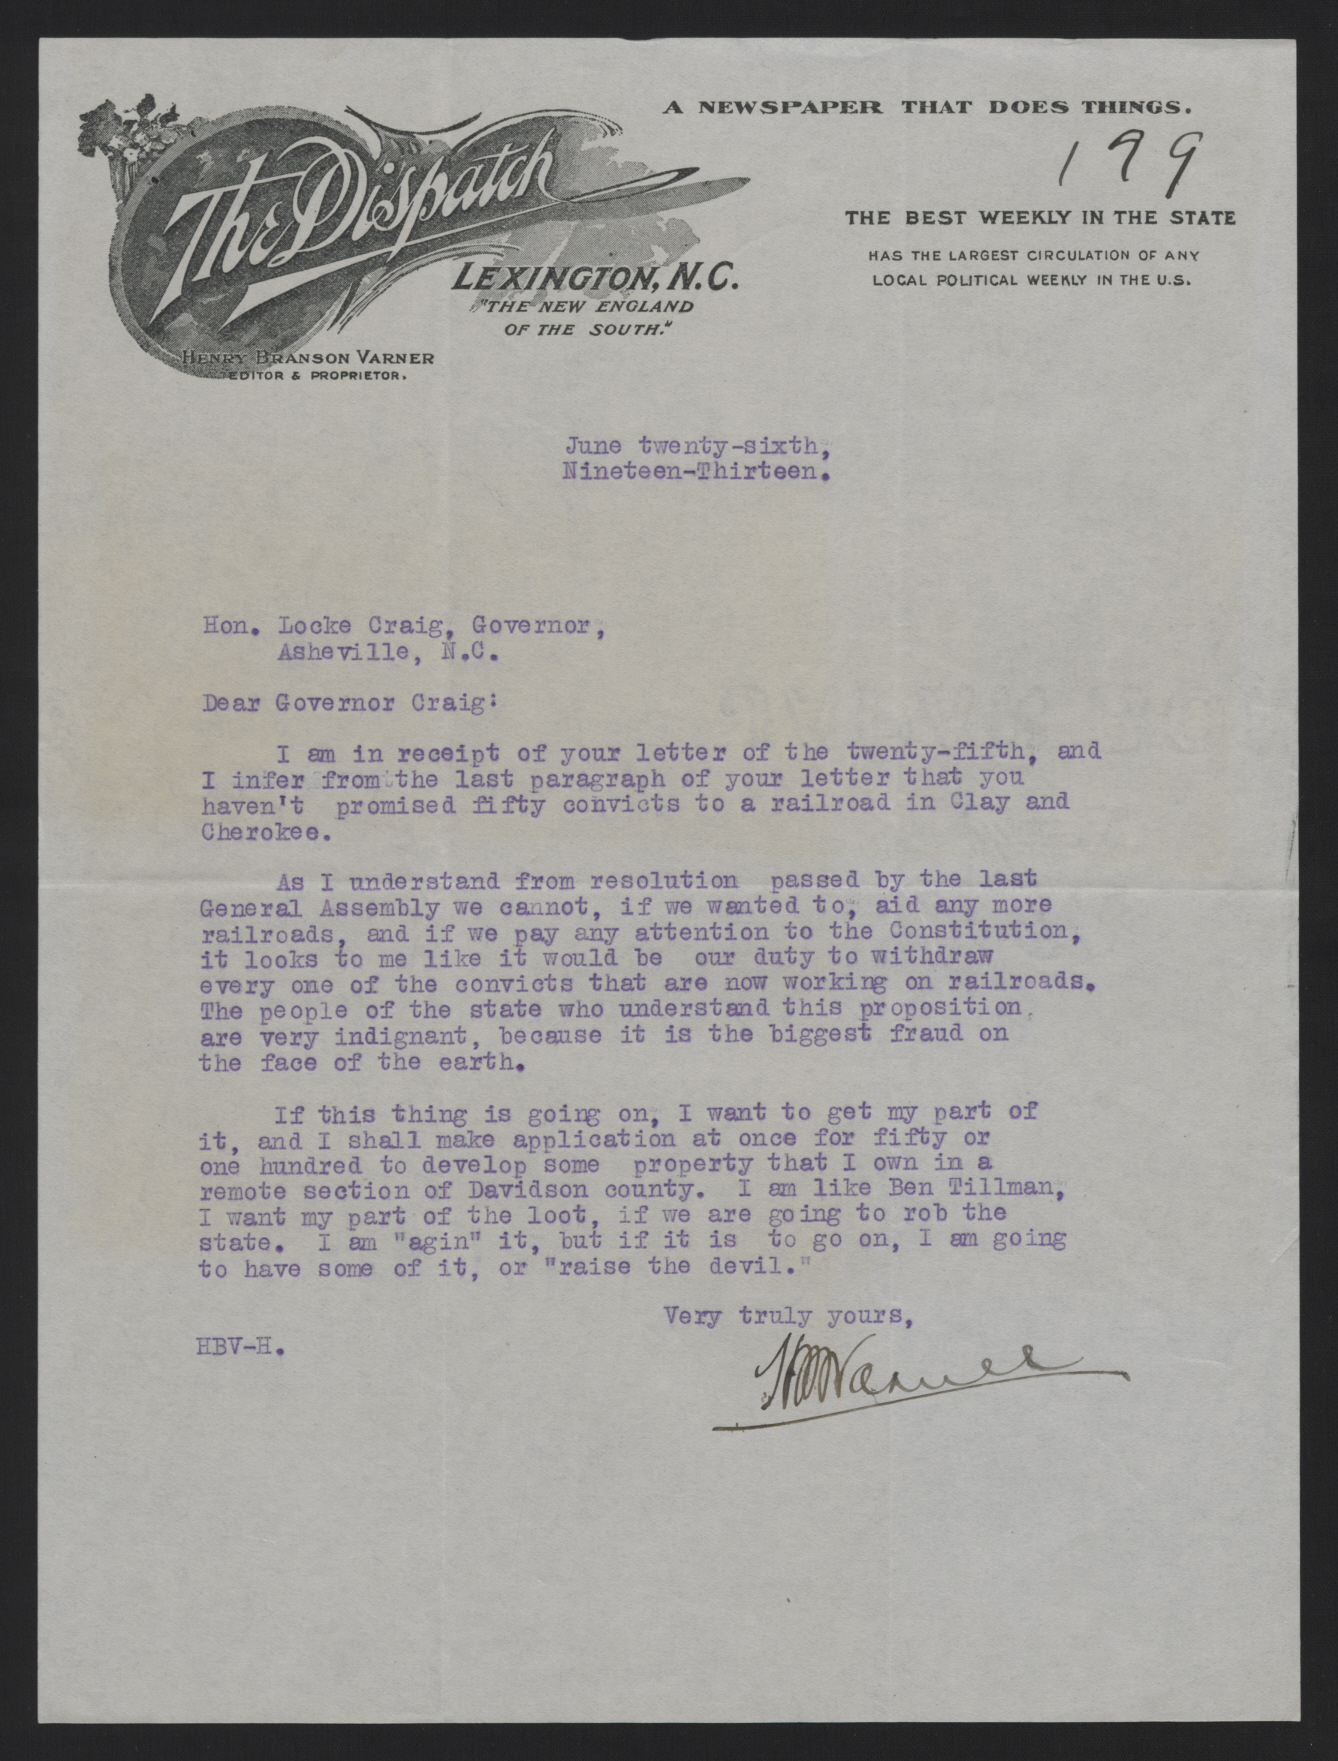 Letter from Varner to Craig, June 26, 1913